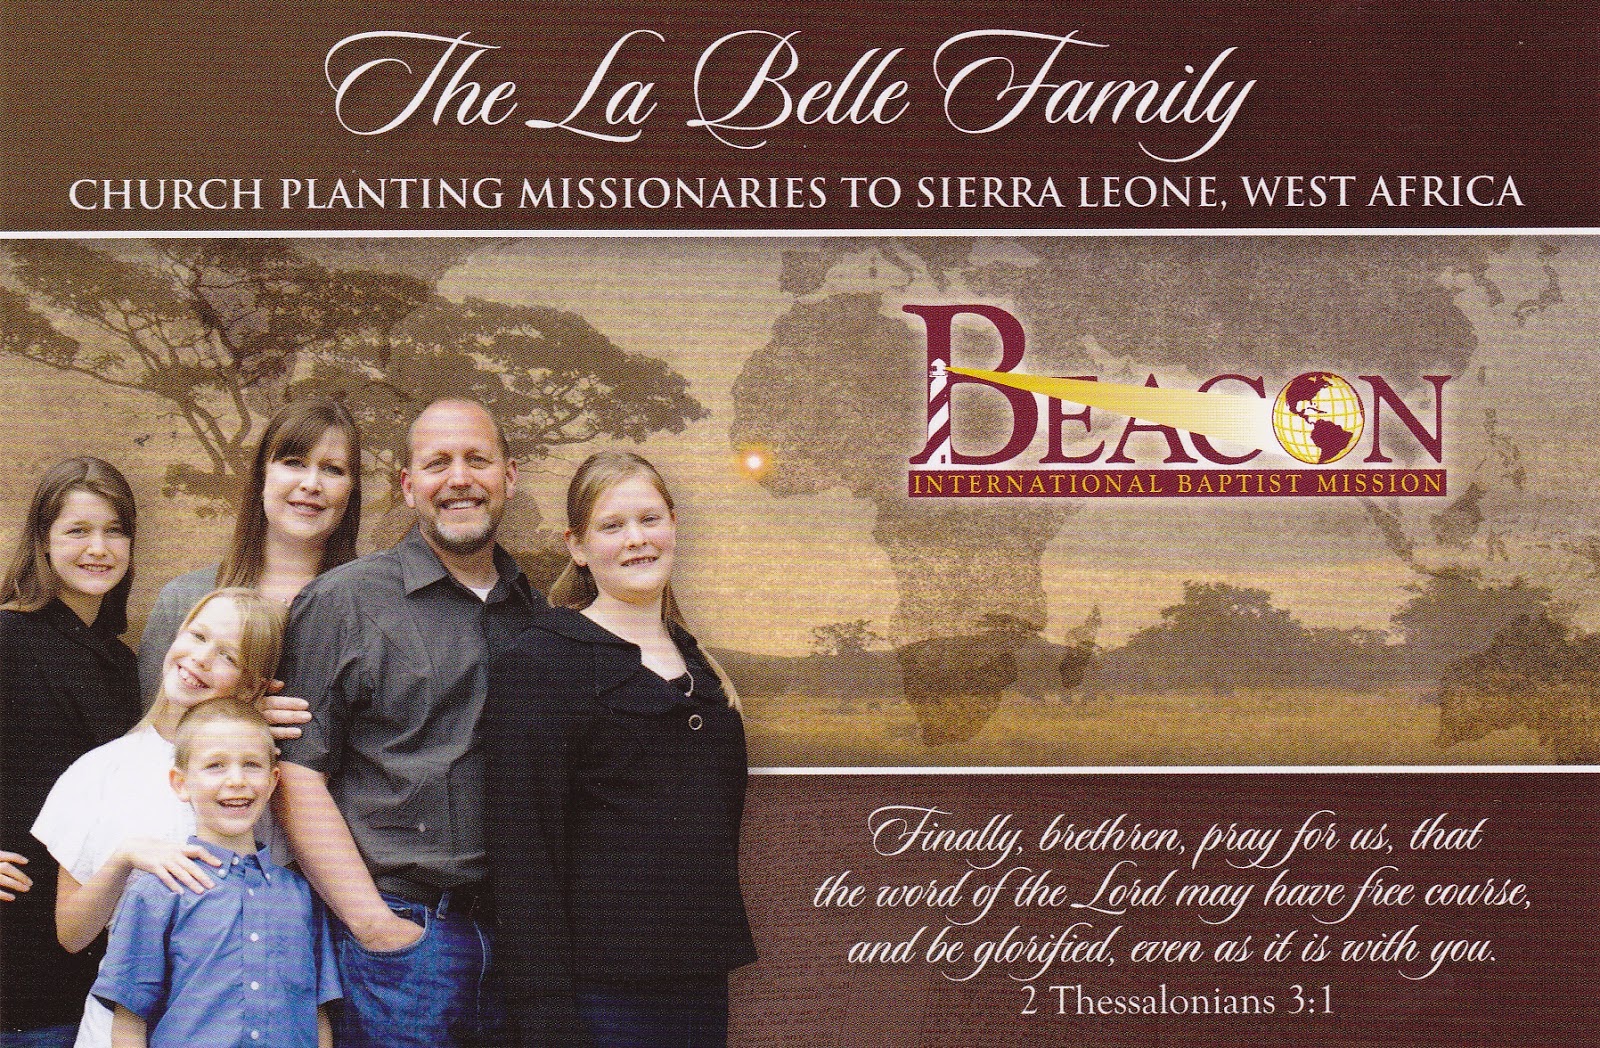 The La Belle Family